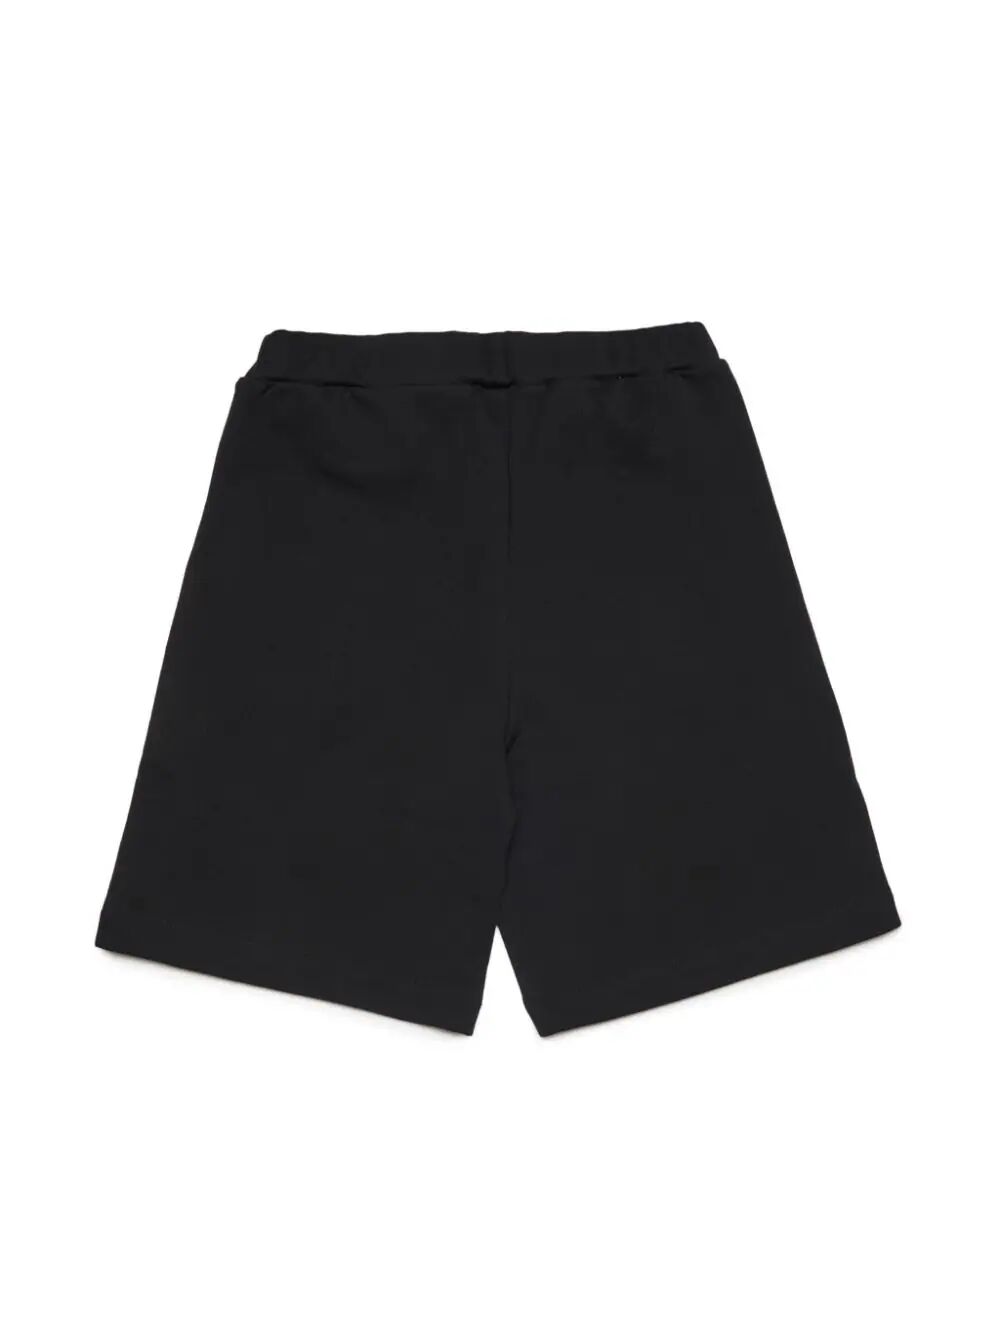 Mp66u Shorts